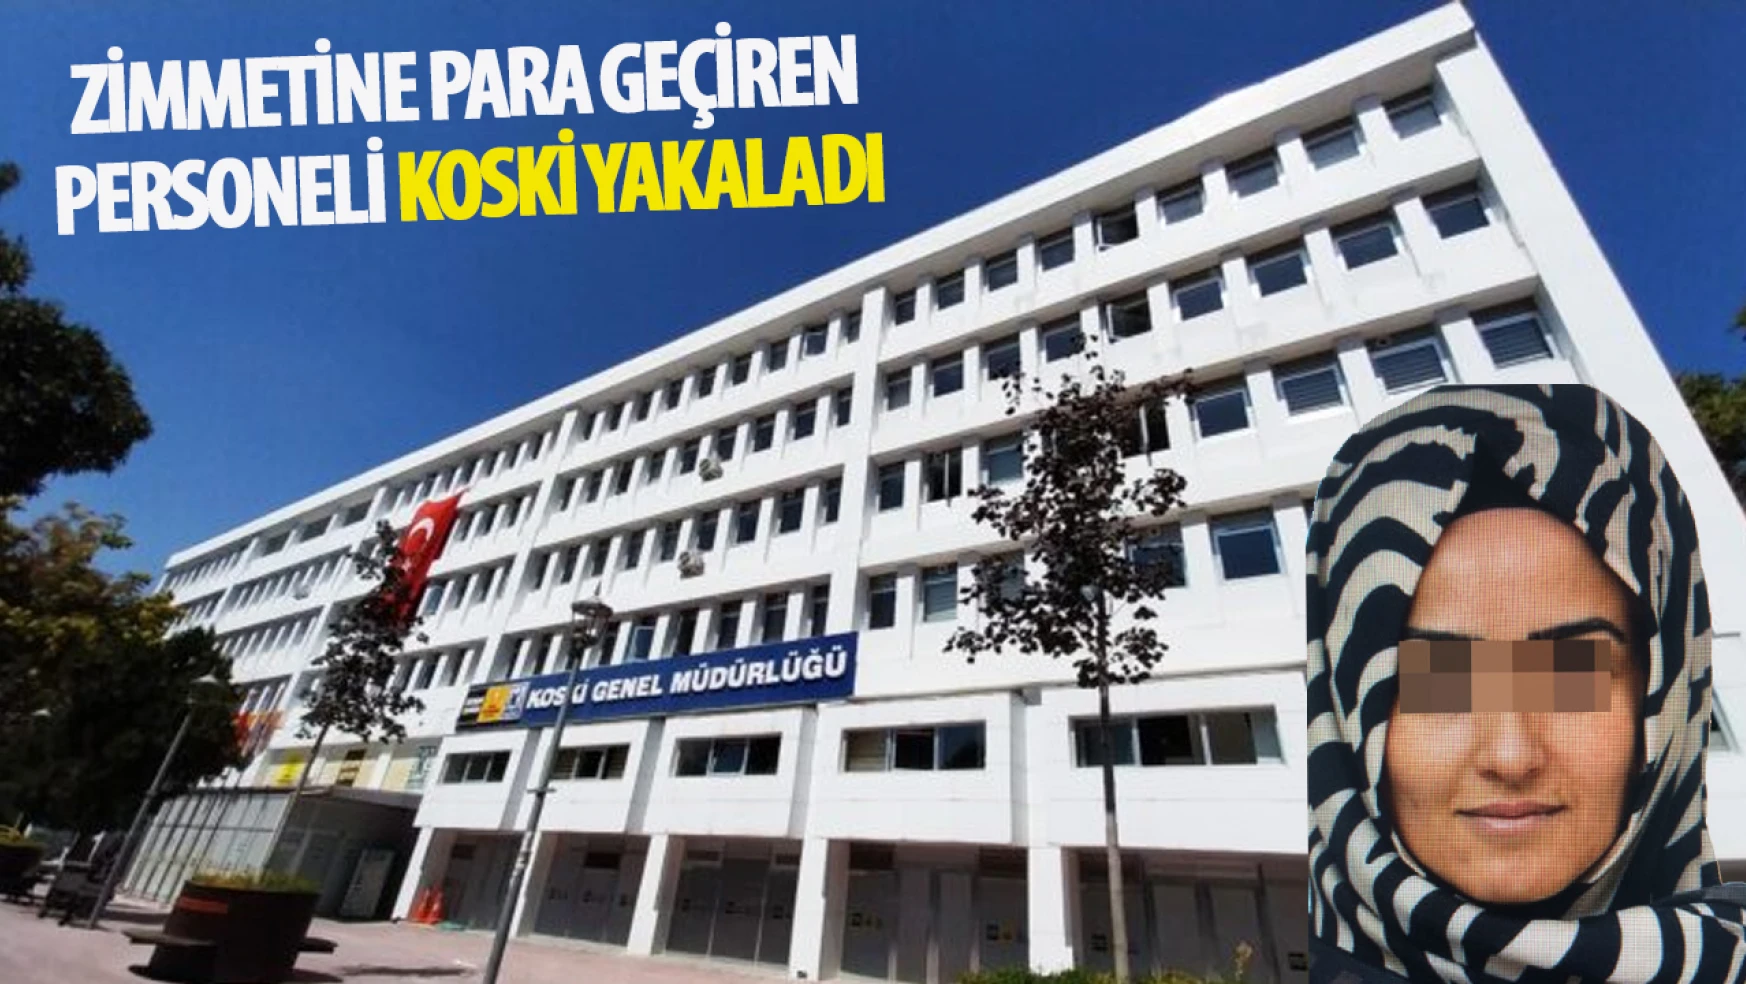 Konya'da KOSKİ Genel Müdürlüğü Çalışanı Zimmet Skandalıyla Tutuklandı